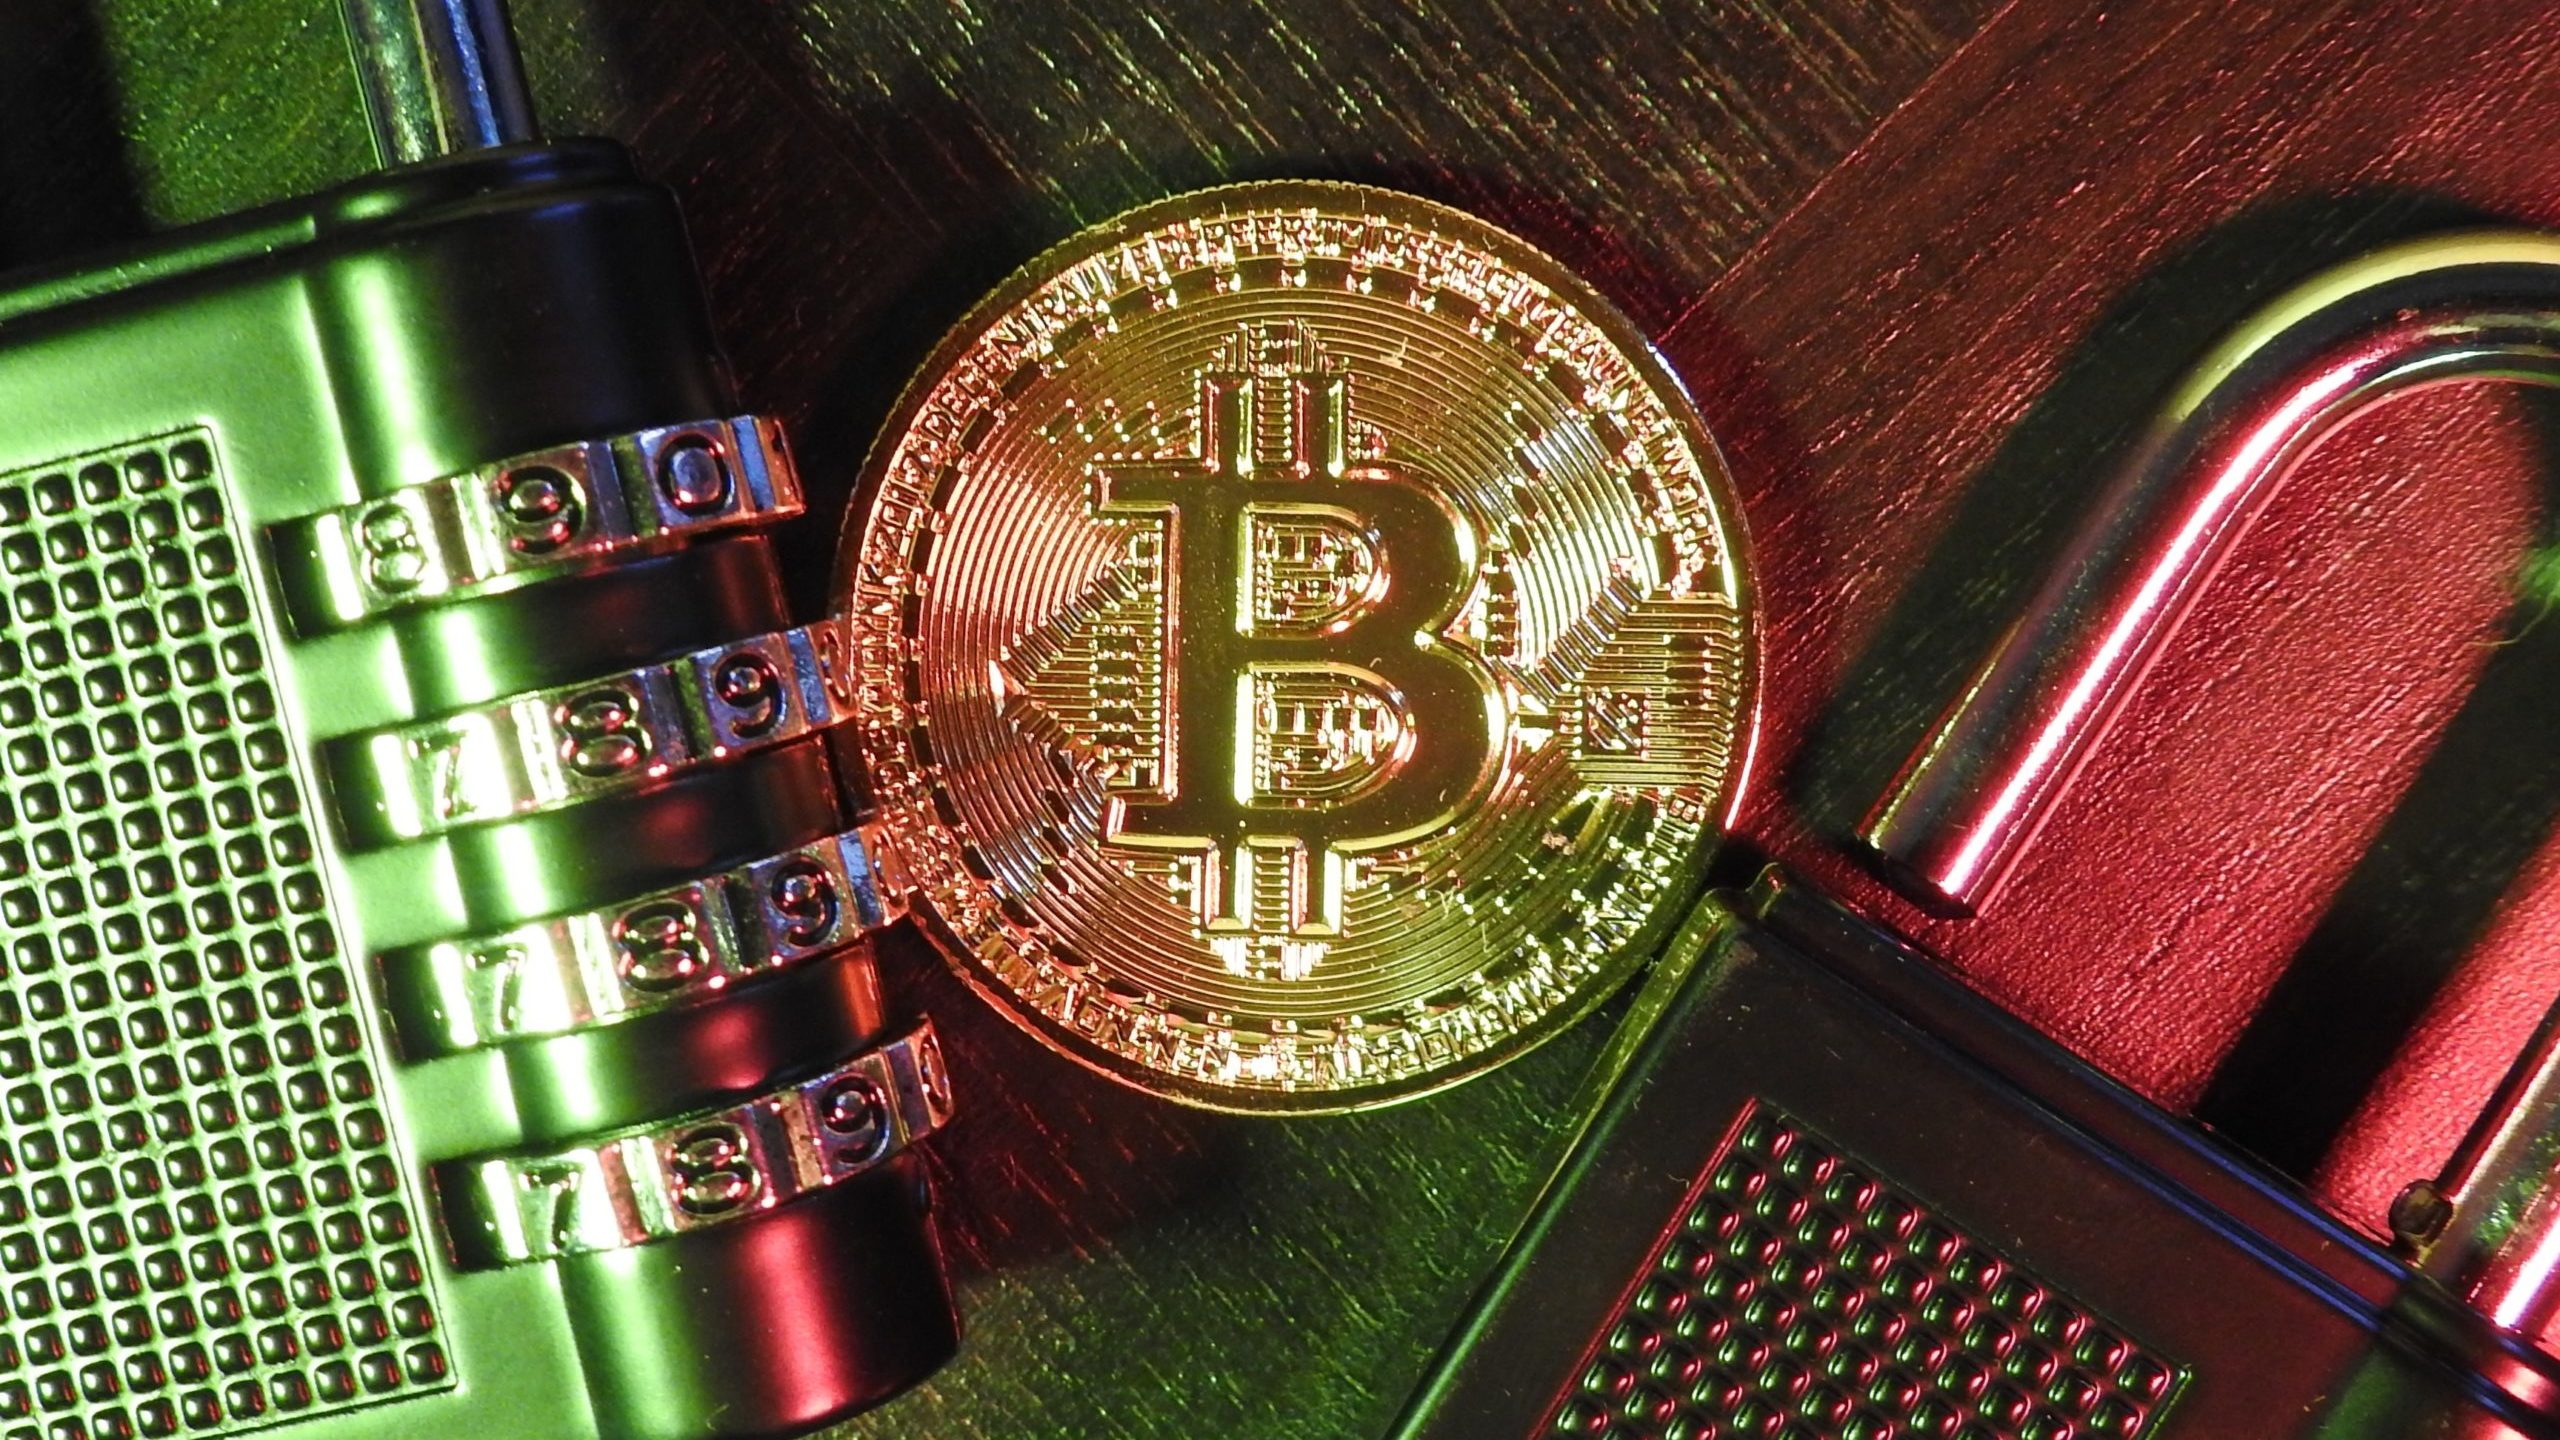 “Rei do bitcoin” é preso suspeito de desviar R$ 1,5 bilhão em criptomoeda | Finanças